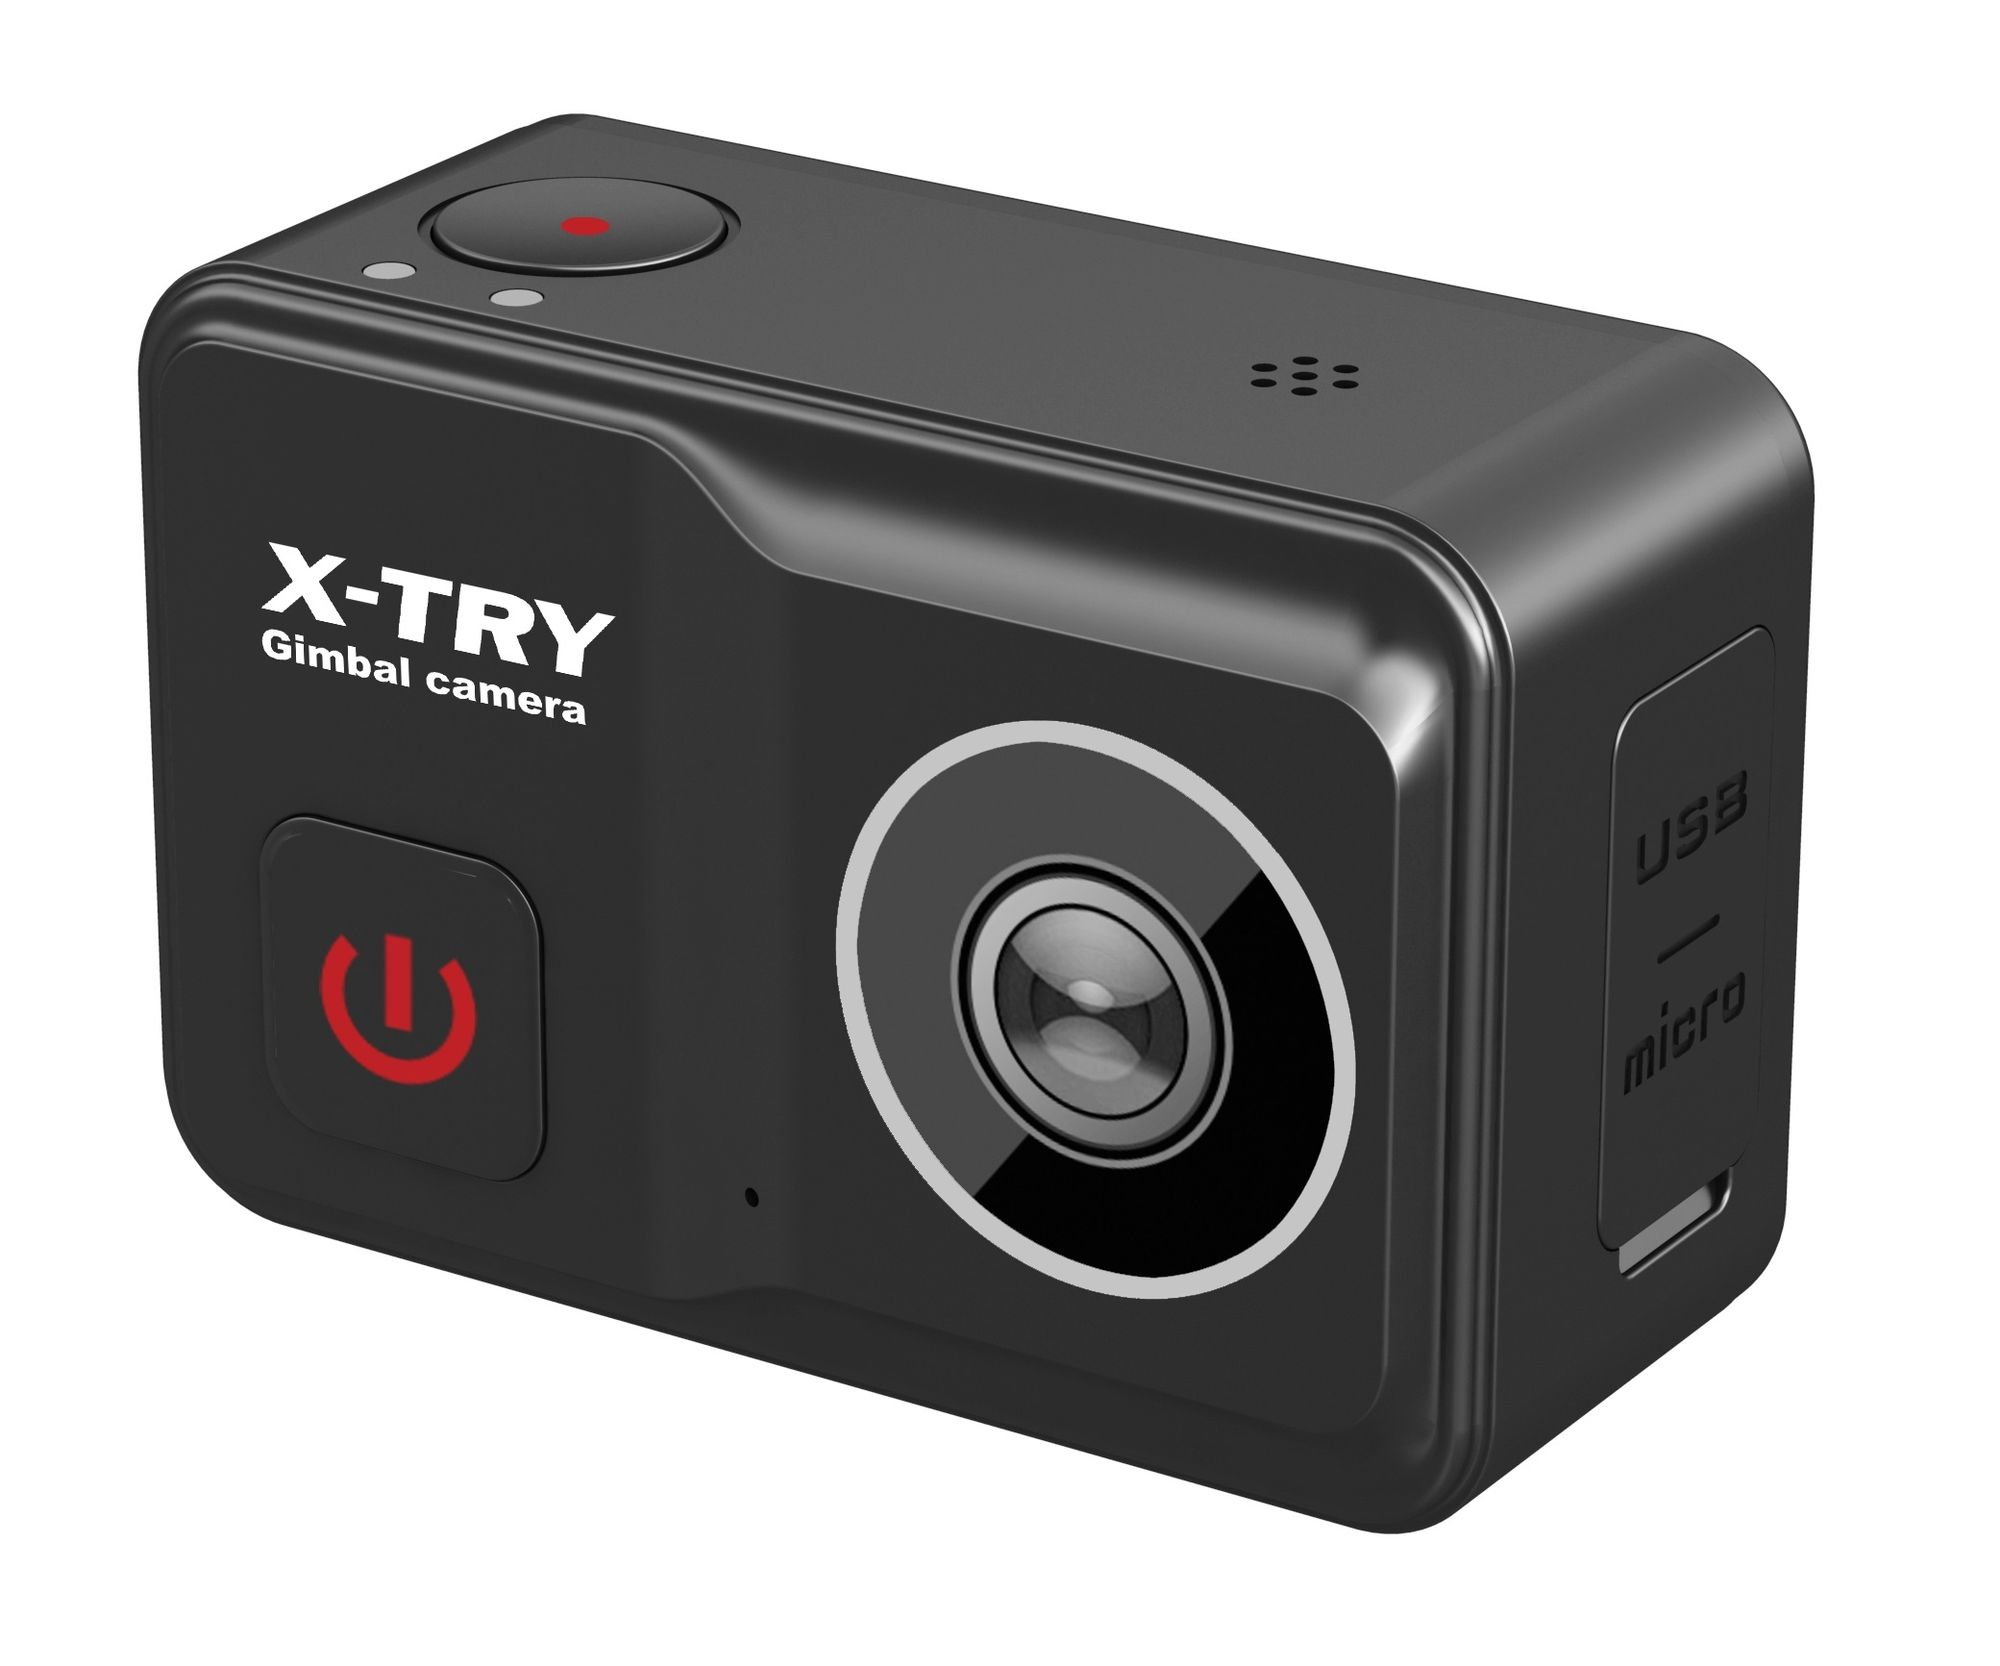 Экшн камера X-Try XTC502 Gimbal Real 4K/60FPS WDR Wi-Fi Power экшн камера x try xtc260 rc real 4k wi fi standart